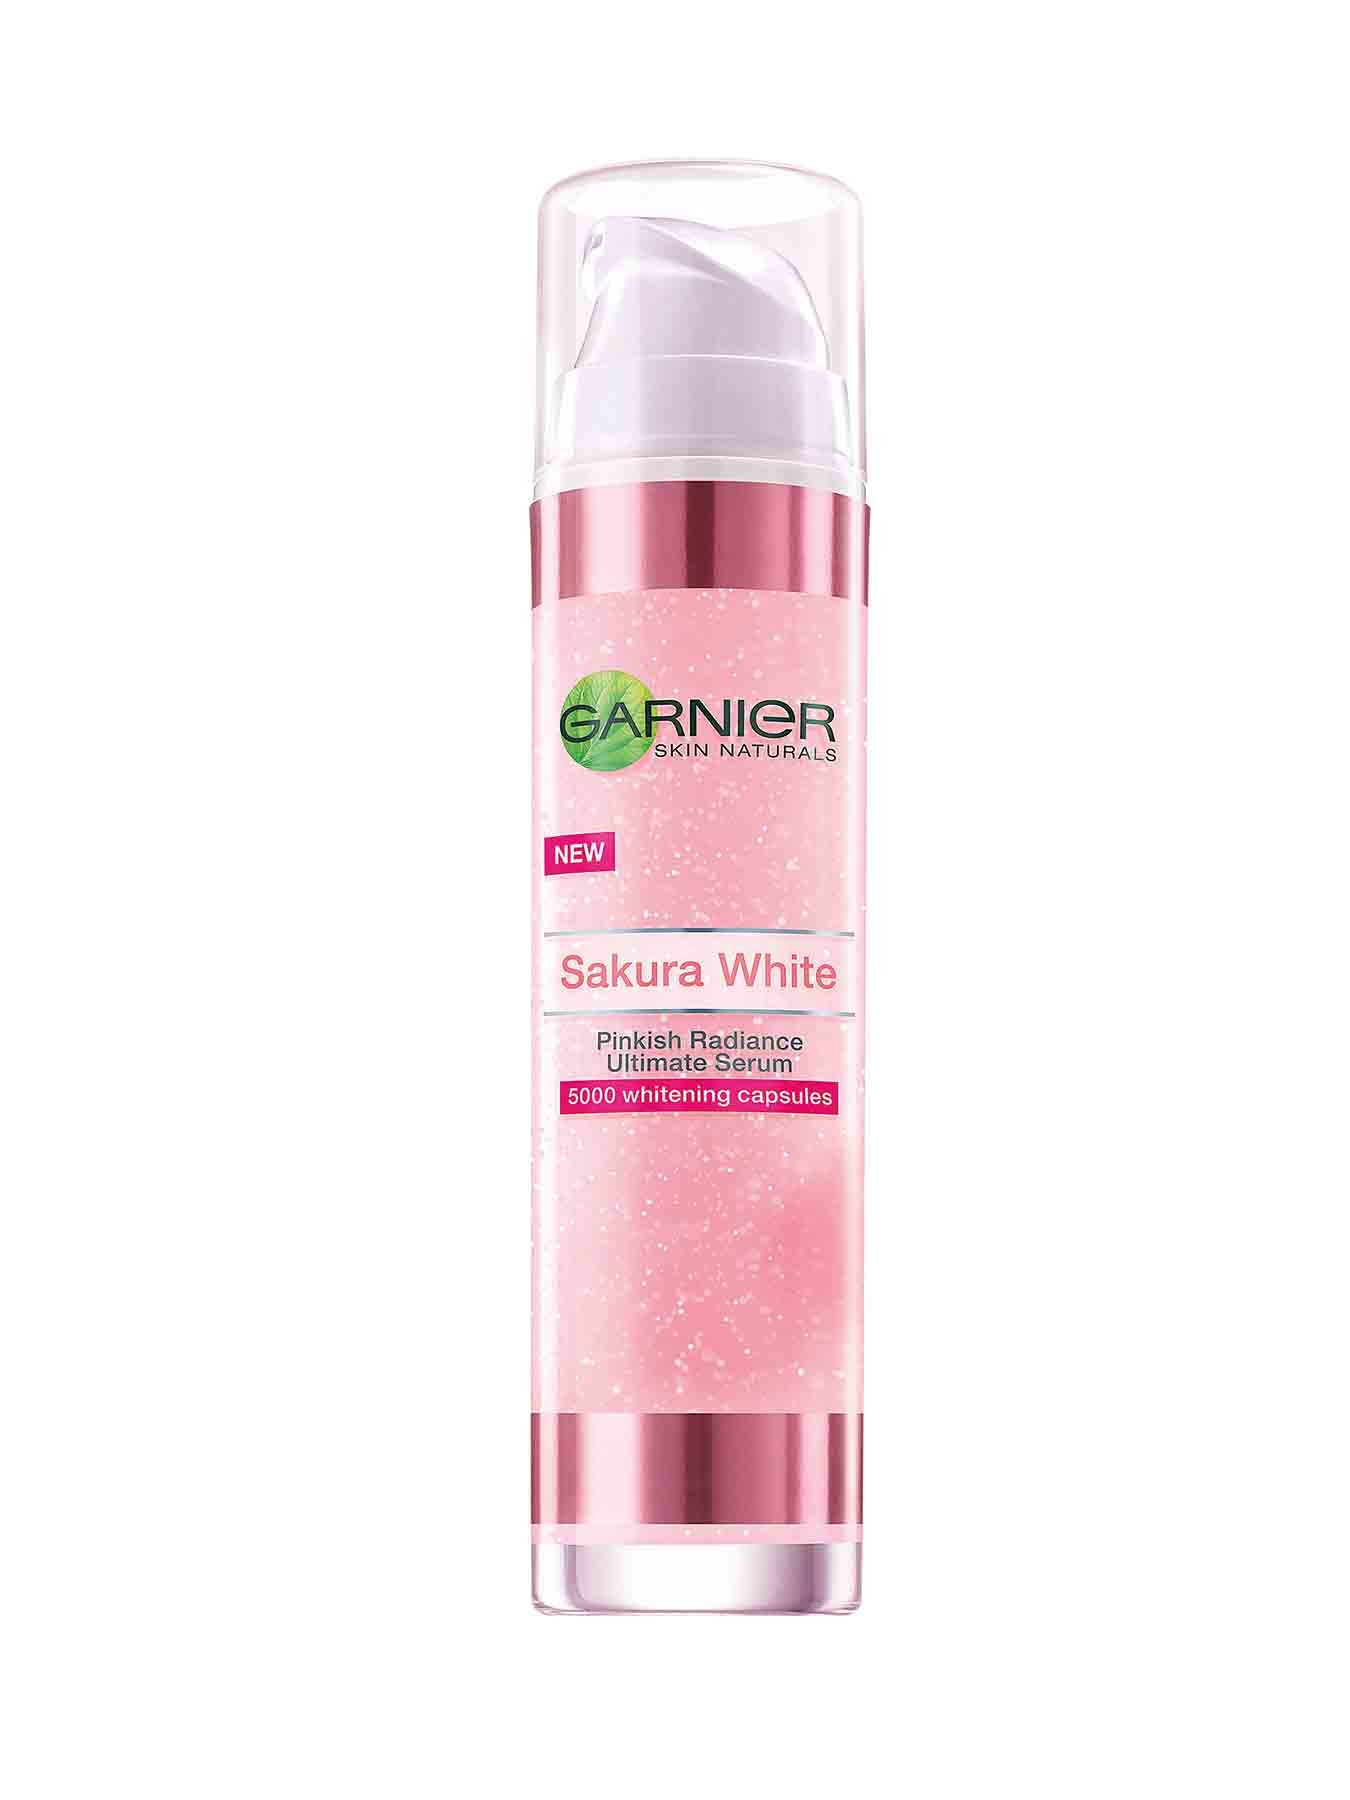 garnier sakura white pinkish radiance ultimate serum